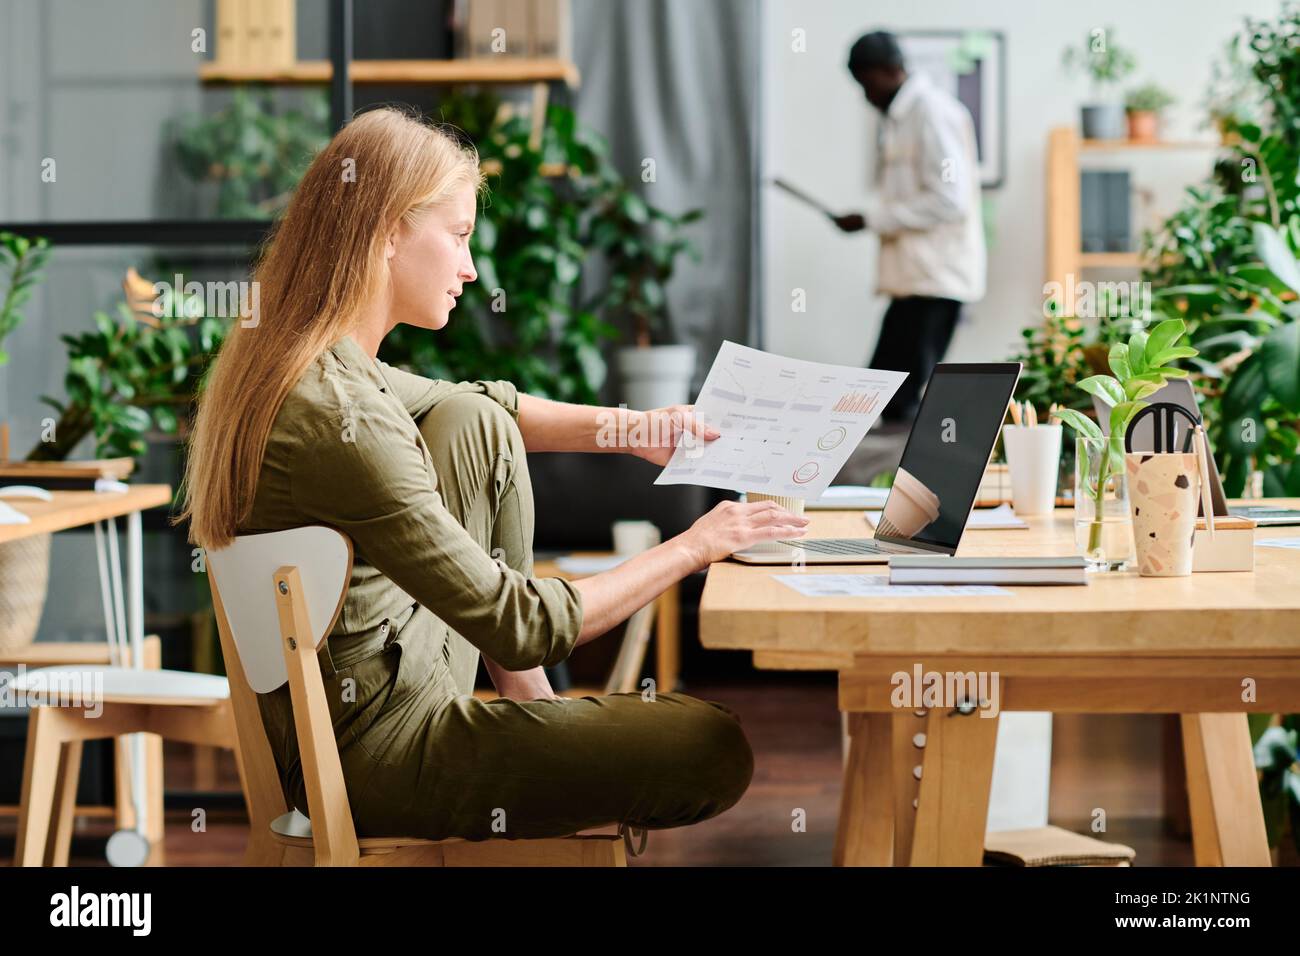 Seitenansicht einer jungen Geschäftsfrau mit langen blonden Haaren, die Finanzdaten im Dokument und auf dem Bildschirm eines Laptops analysiert Stockfoto